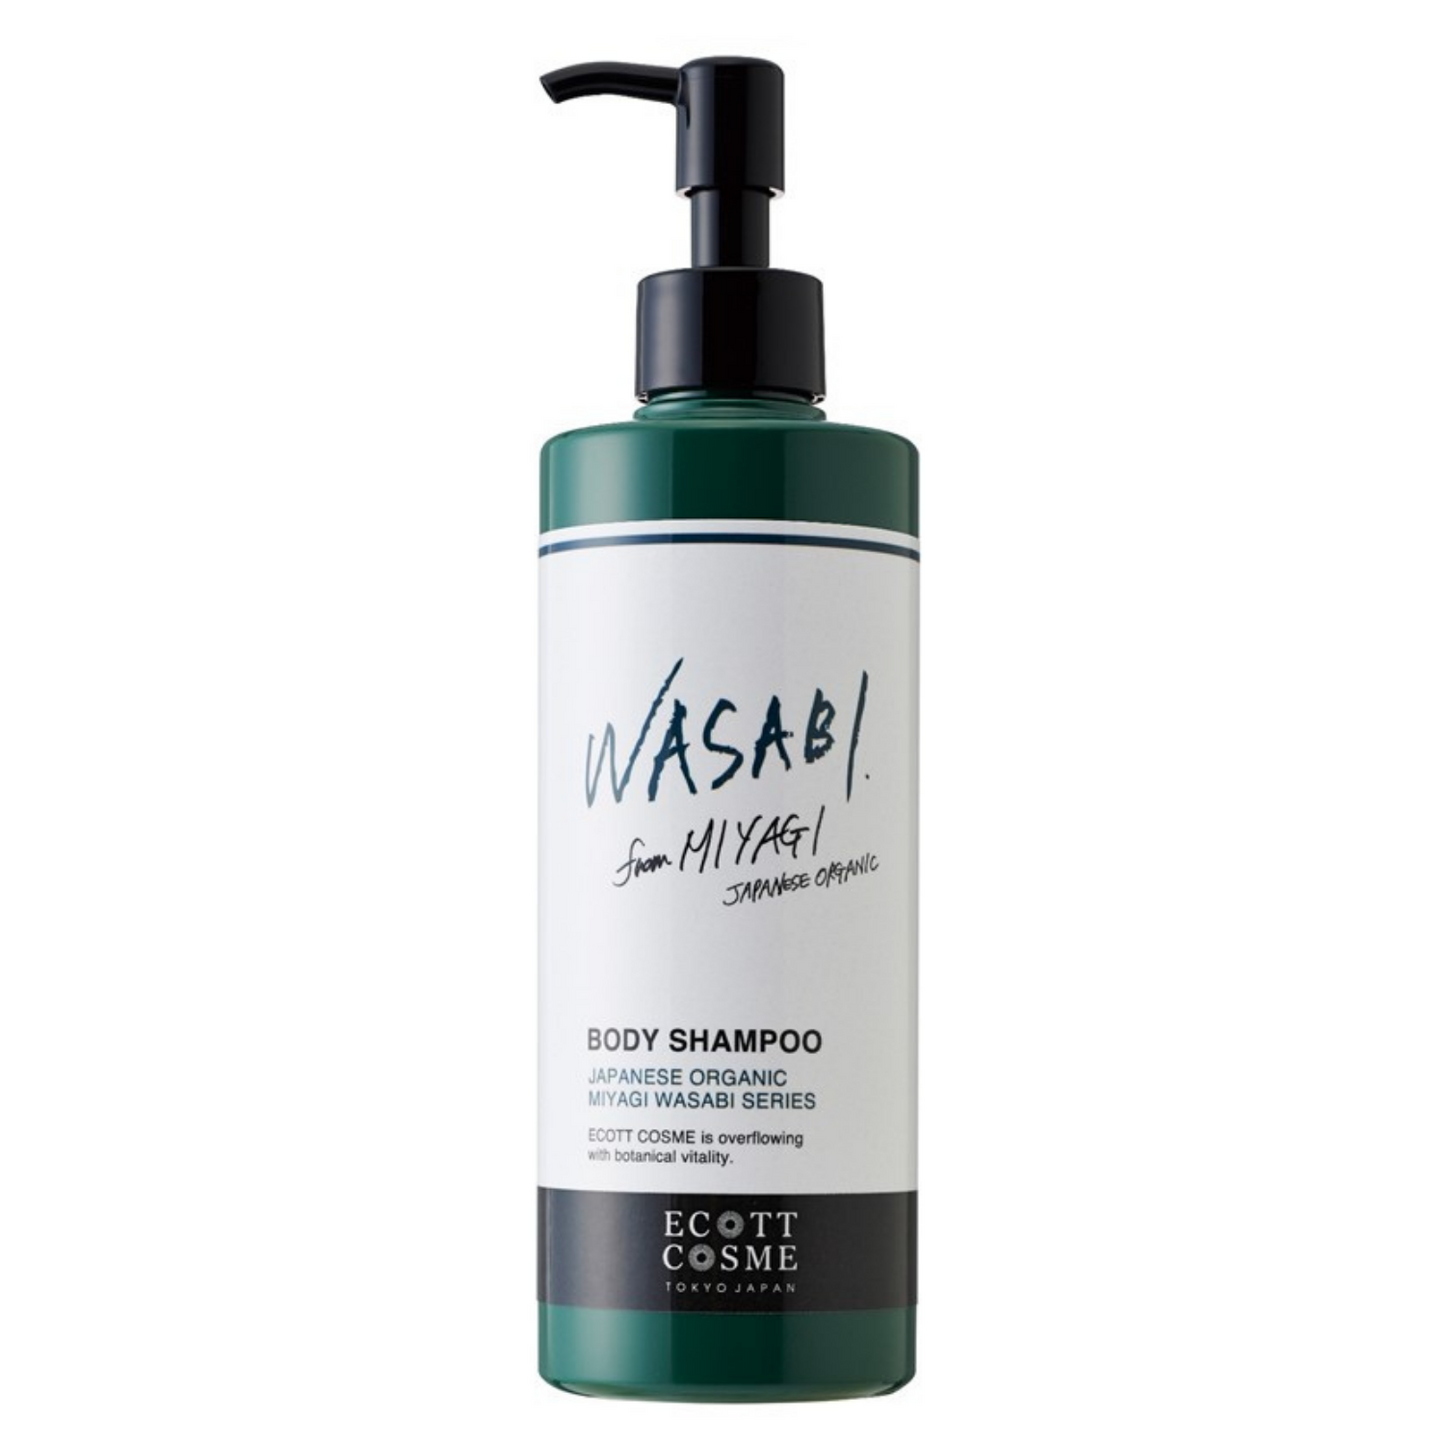 Ecott Cosme Wasabi Body Shampoo R 6 (Level 1) - WERONE